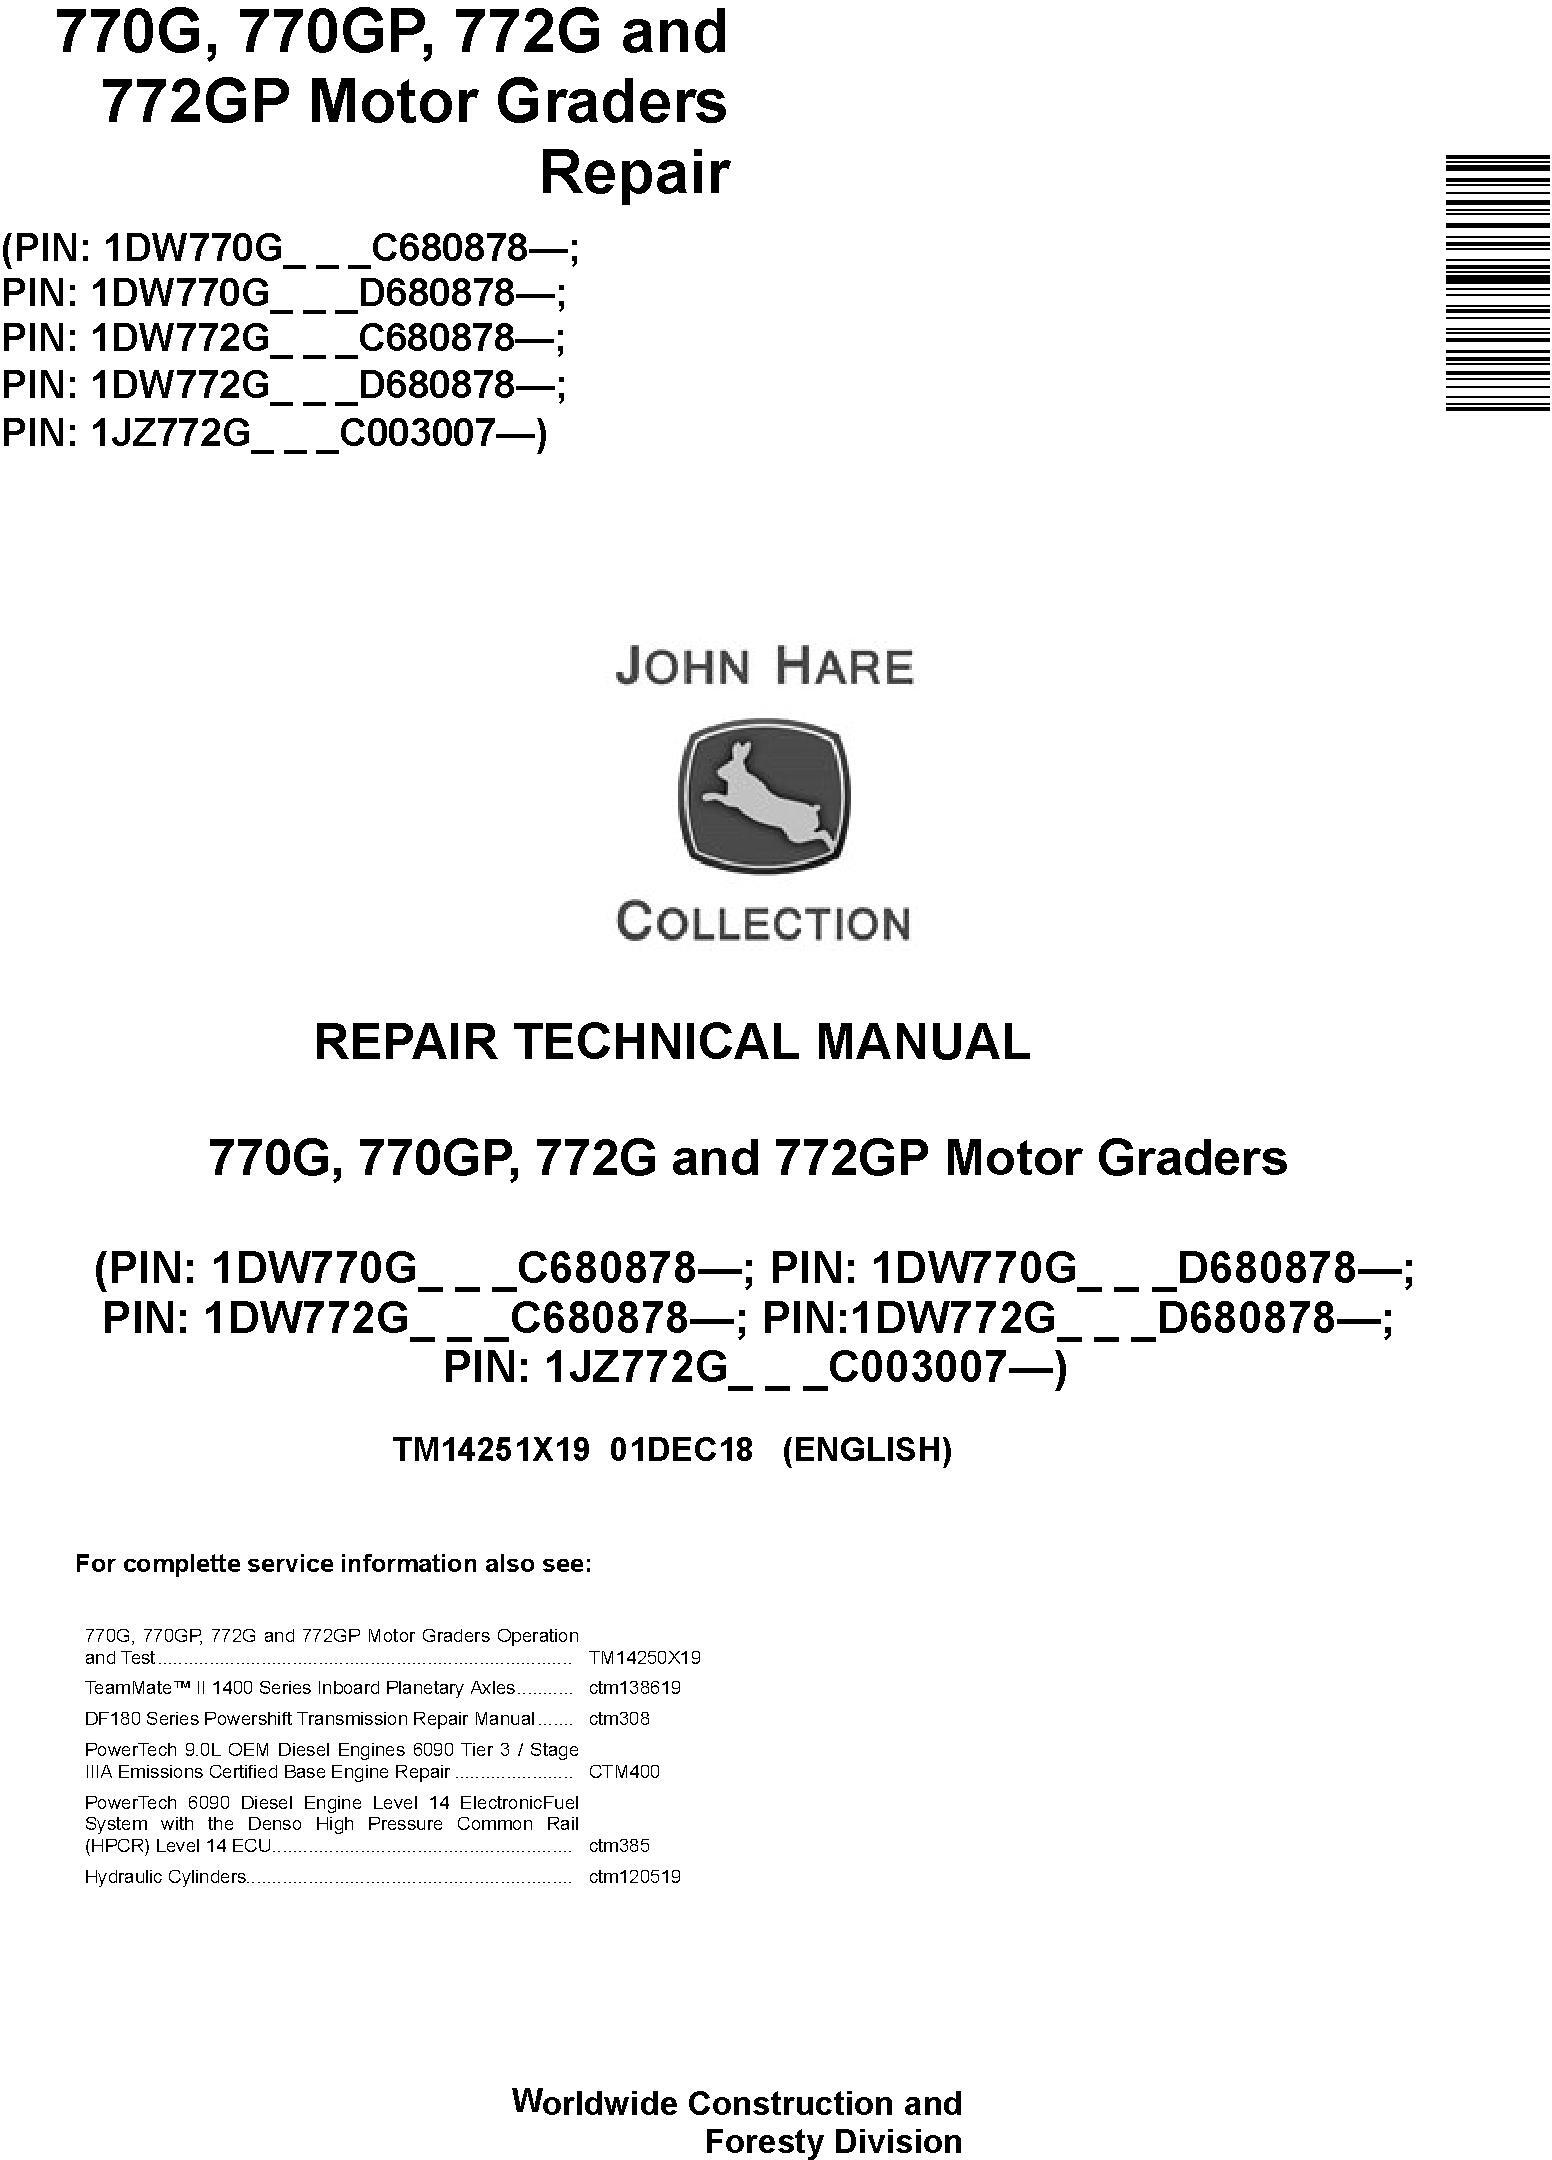 John Deere 770G, 770GP, 772G, 772GP (SN. C680878-,D680878-) Motor Graders Repair Manual (TM14251X19) - 19009